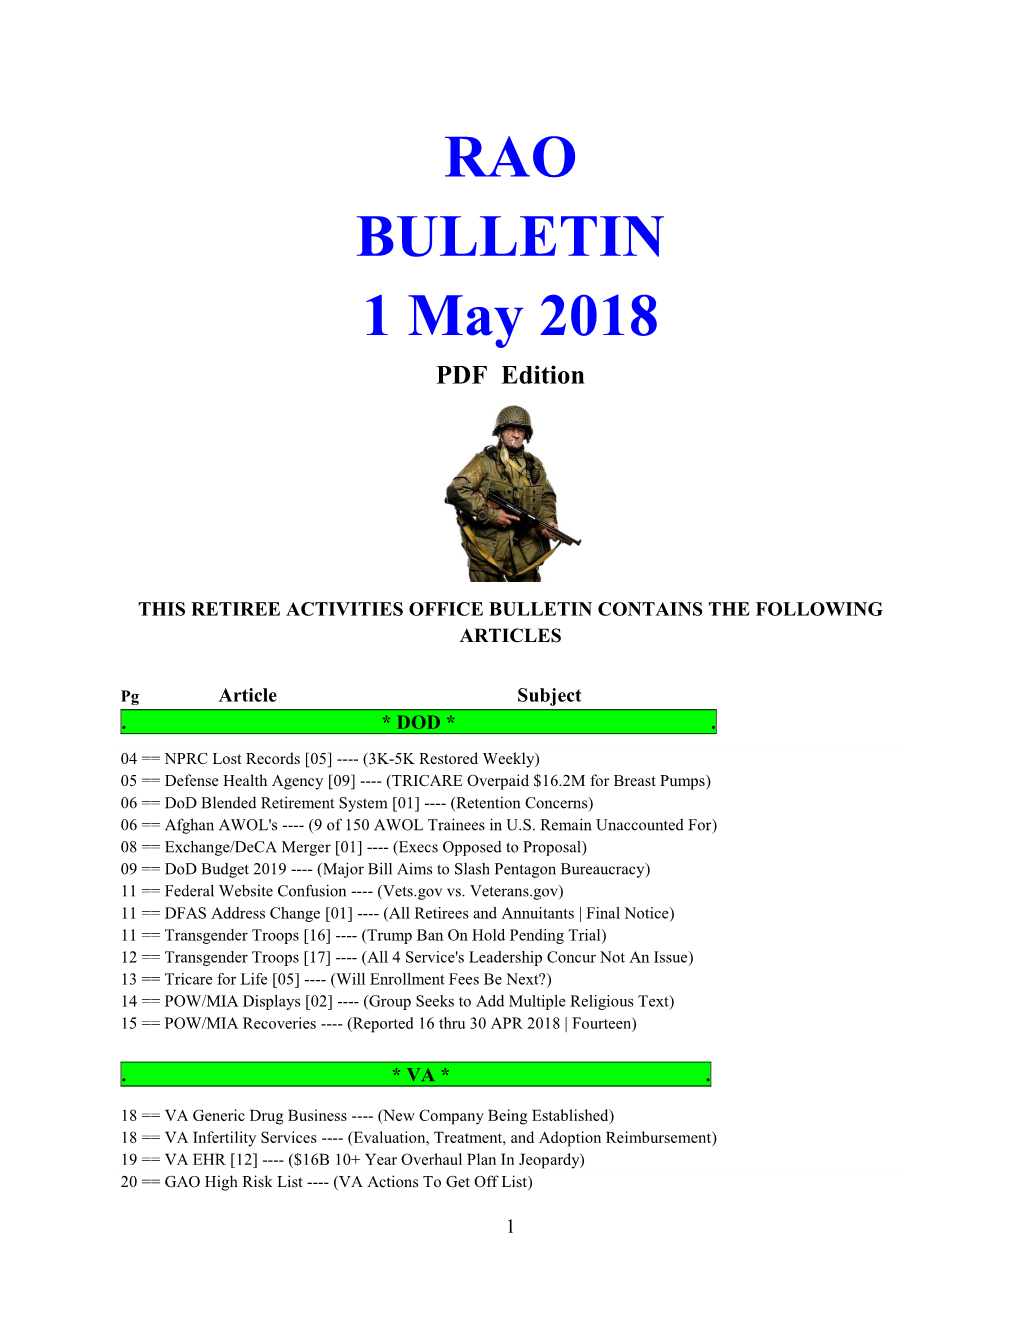 Bulletin 180501 (PDF Edition)